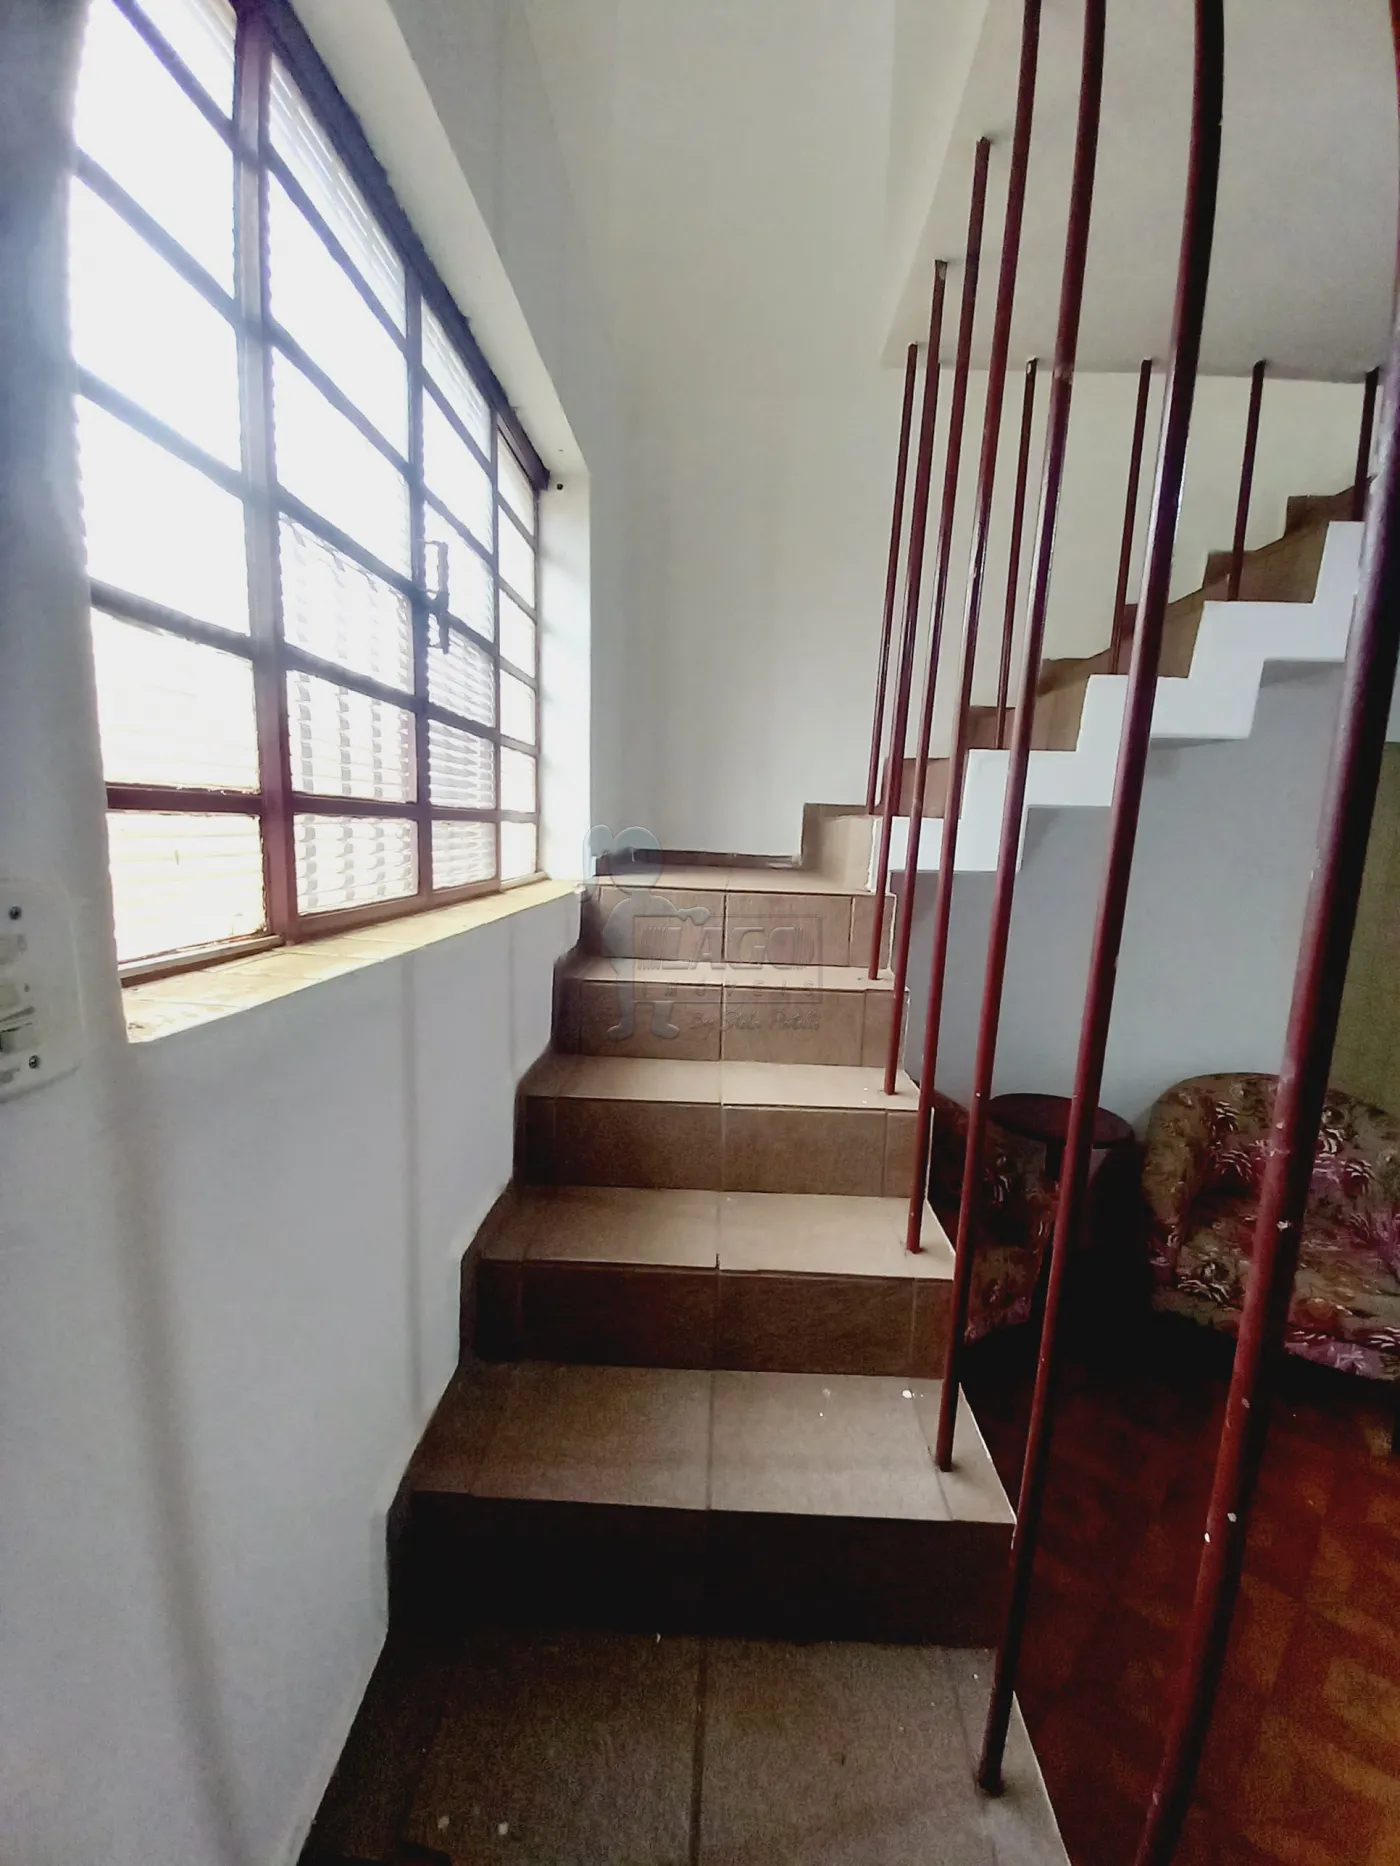 Comprar Casa / Padrão em Ribeirão Preto R$ 300.000,00 - Foto 10